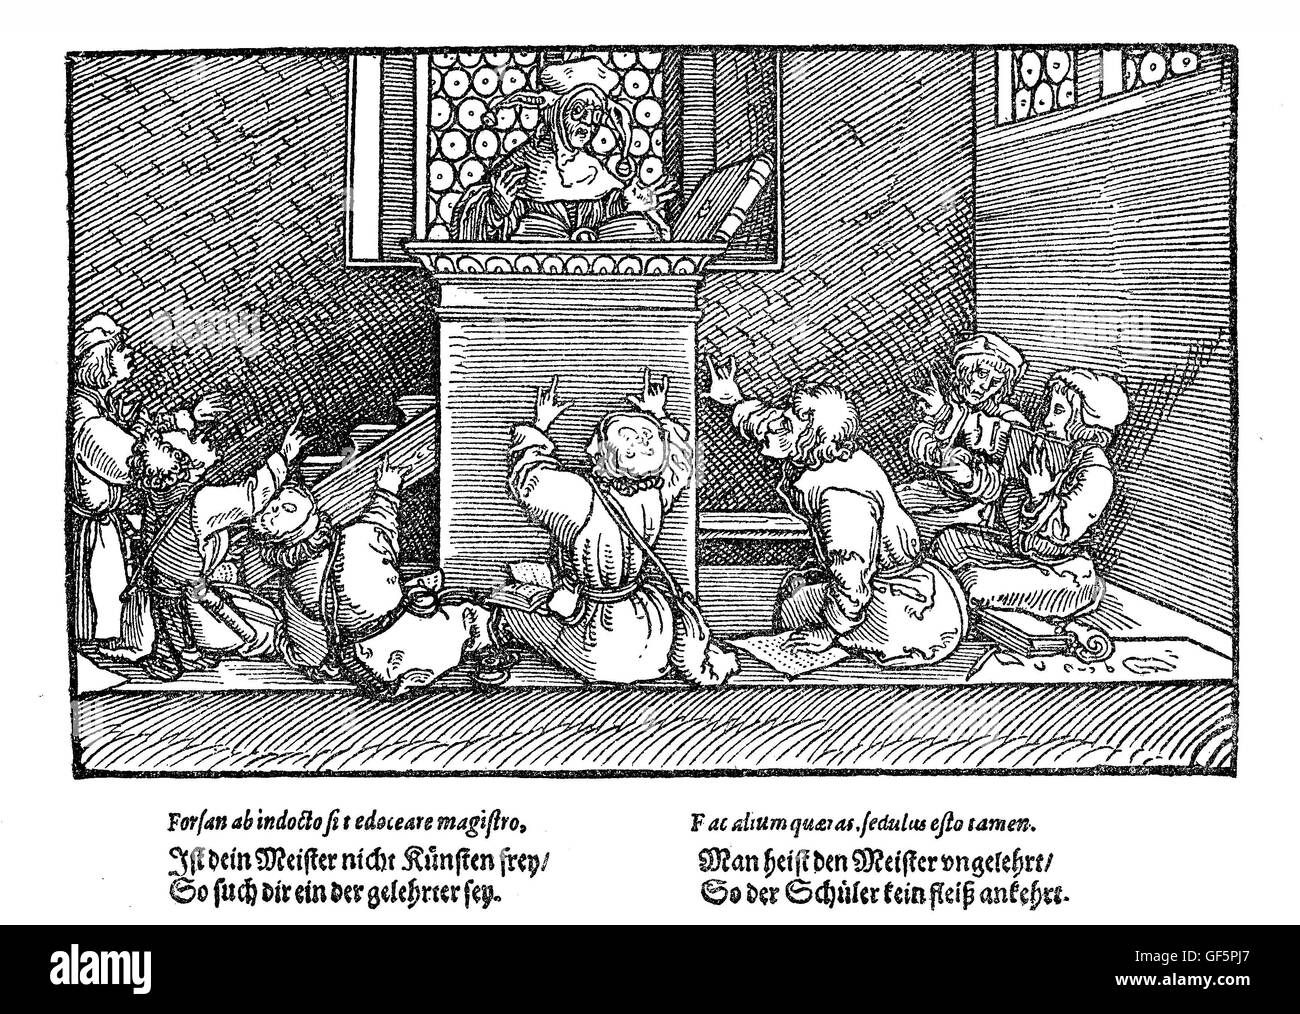 Une salle de classe de XVI siècle. Comme l'illustration est de 'chimpf und Ernst' (''histoires amusantes et sérieuses', par Johannes Pauli,1455-1533 ?), il y a encore de l'espoir qu'il s'agit d'une caricature plutôt qu'une présentation réaliste de l'enseignement scolaire en XVI siècle... Banque D'Images